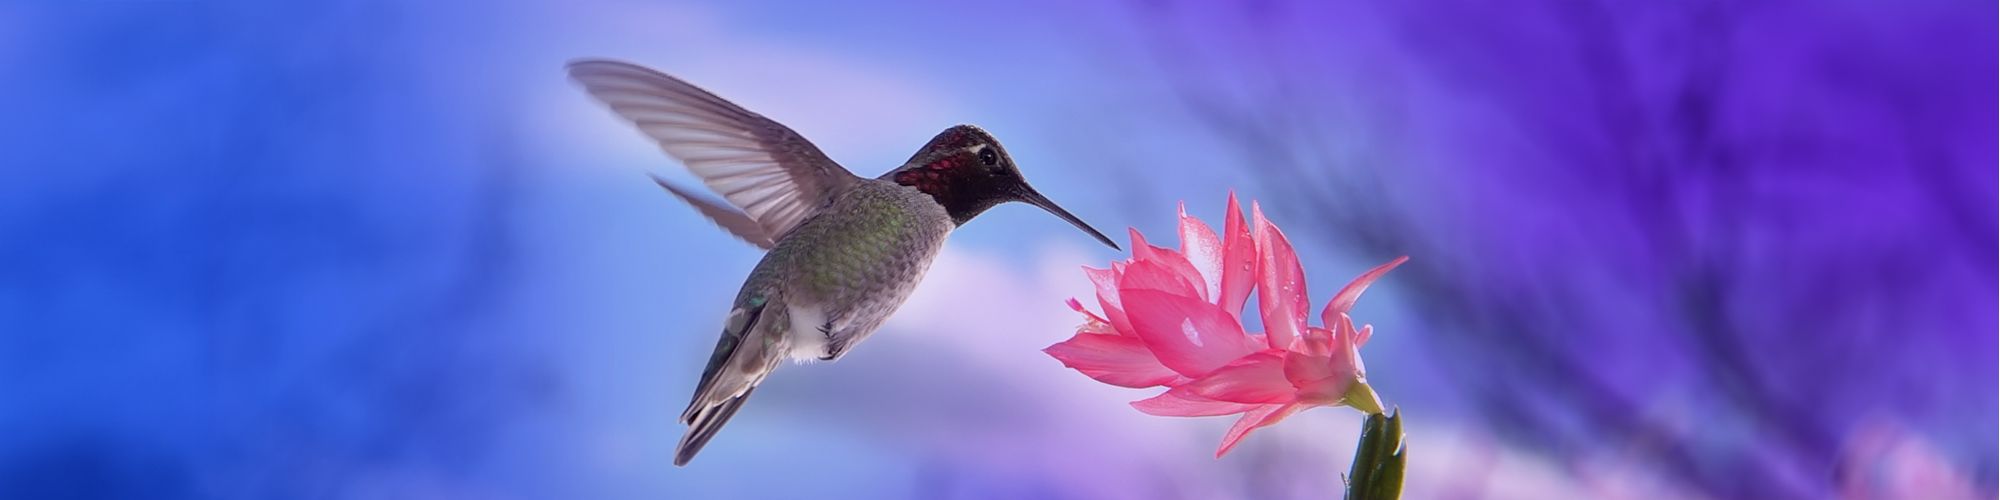 En fugl nipper til nektar fra en blomst